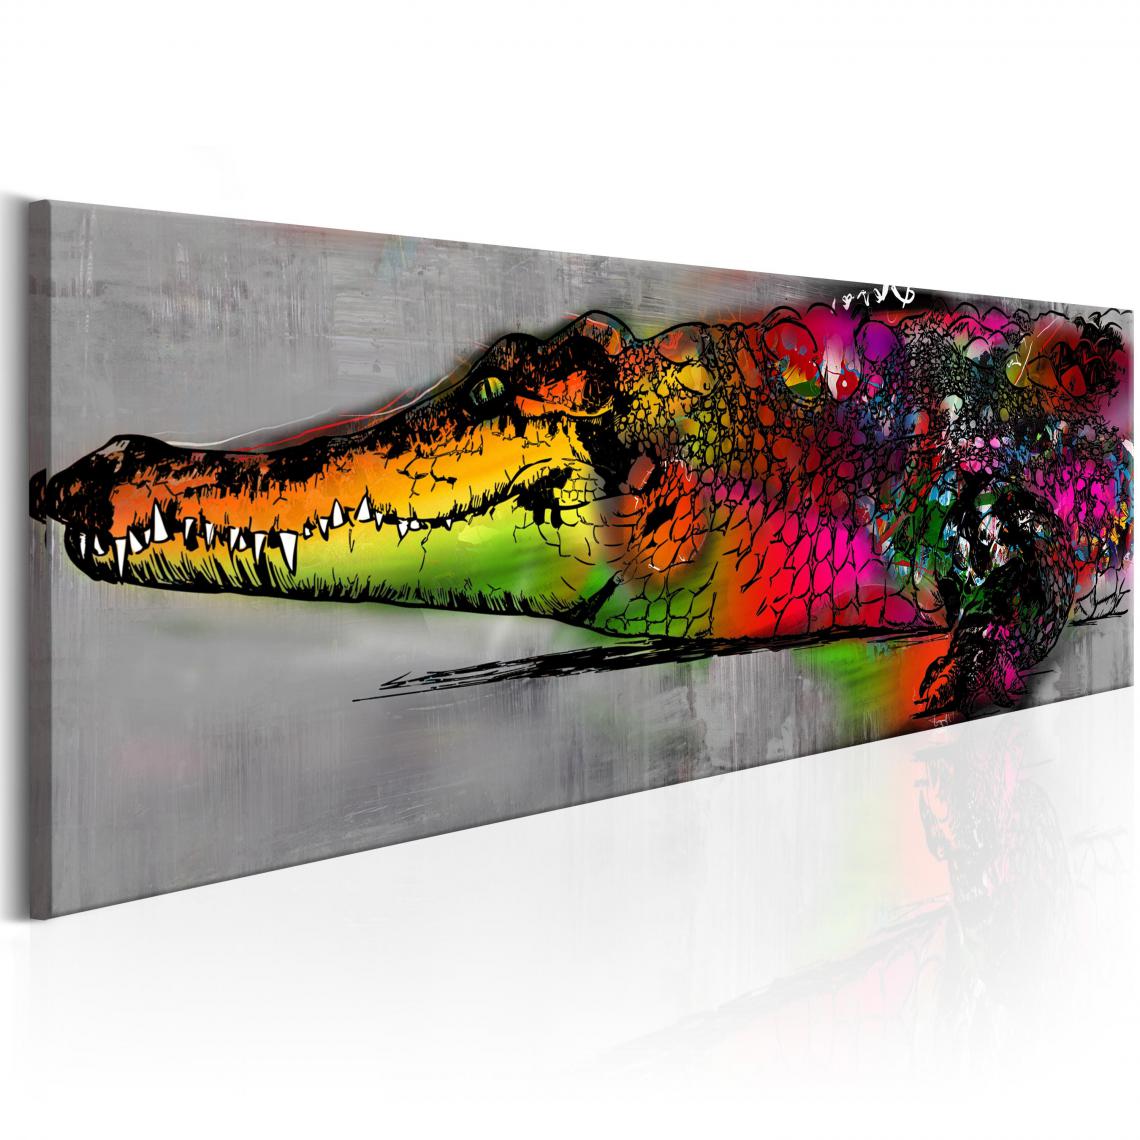 Decoshop26 - Tableau sur toile décoration murale image imprimée cadre en bois à suspendre Alligator coloré 120x40 cm 11_0002715 - Tableaux, peintures